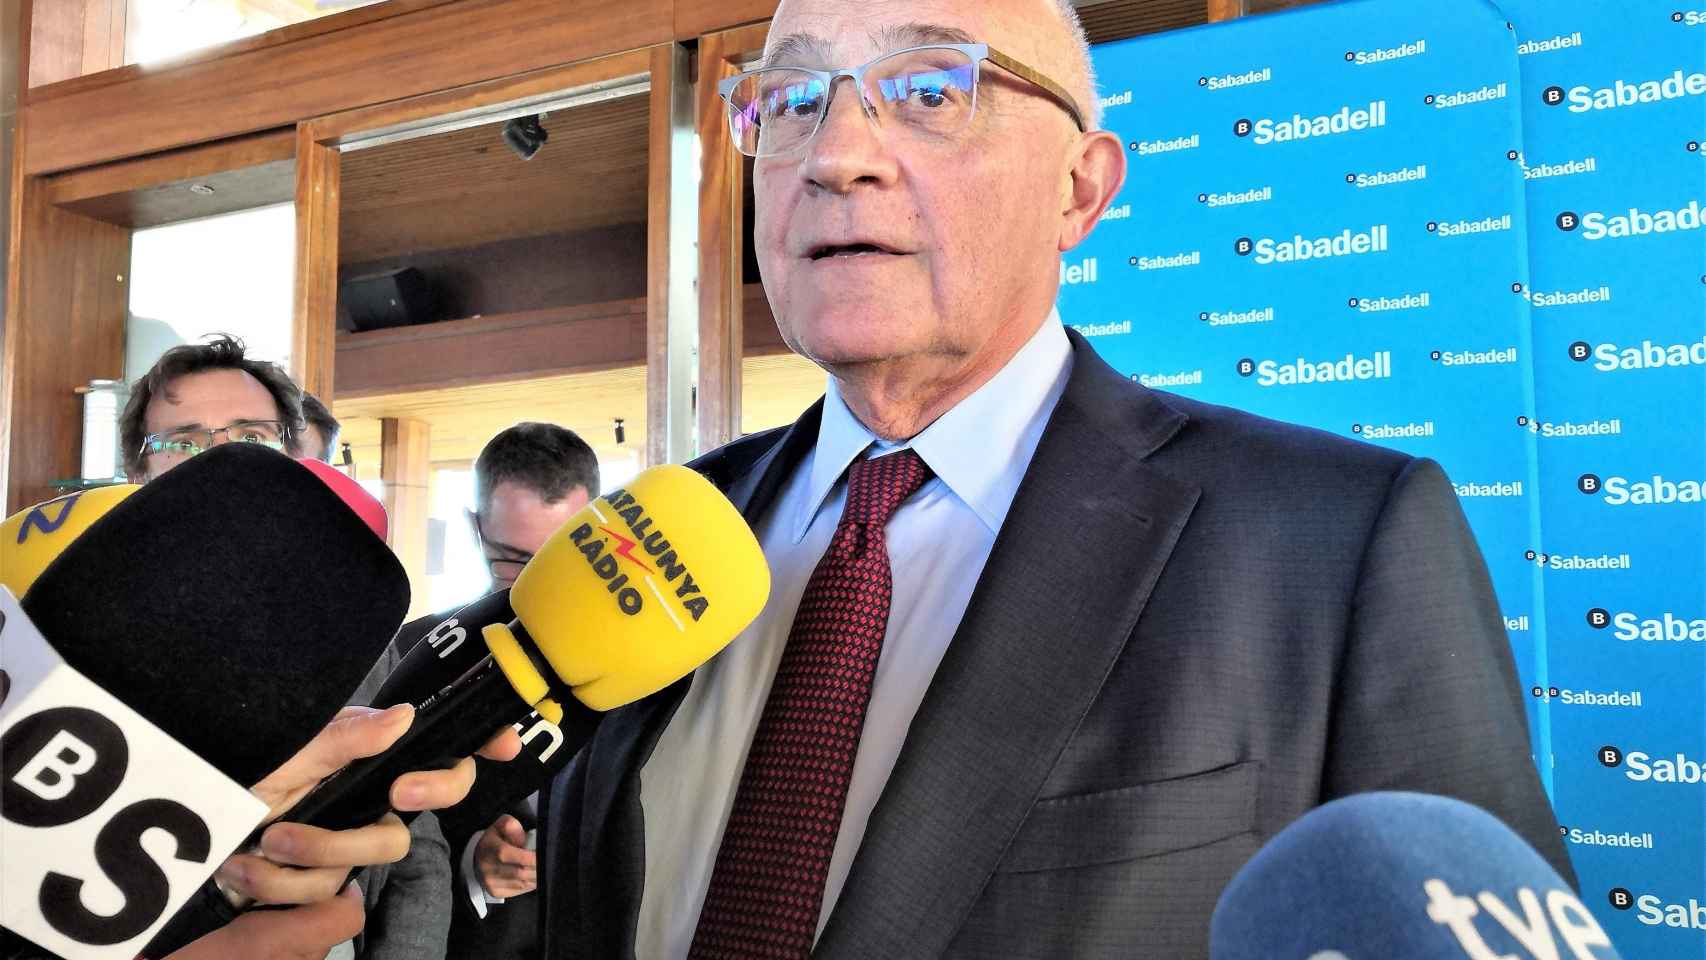 José Oliu, presidente de Banco Sabadell, atiende a los medios antes de la junta de accionistas